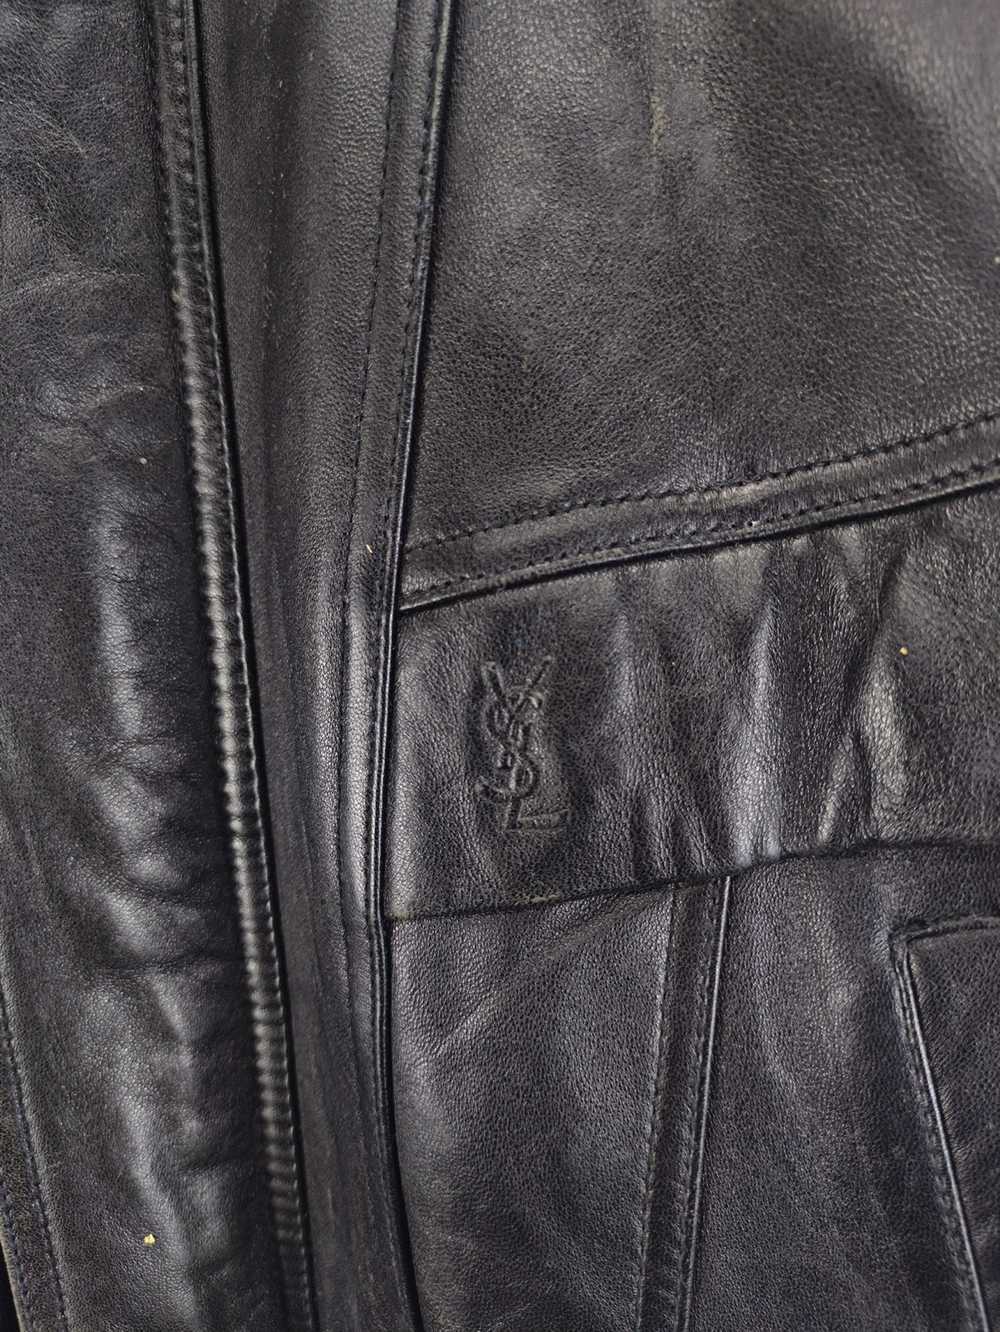 Leather Jacket × Ysl Pour Homme × Yves Saint Laur… - image 3